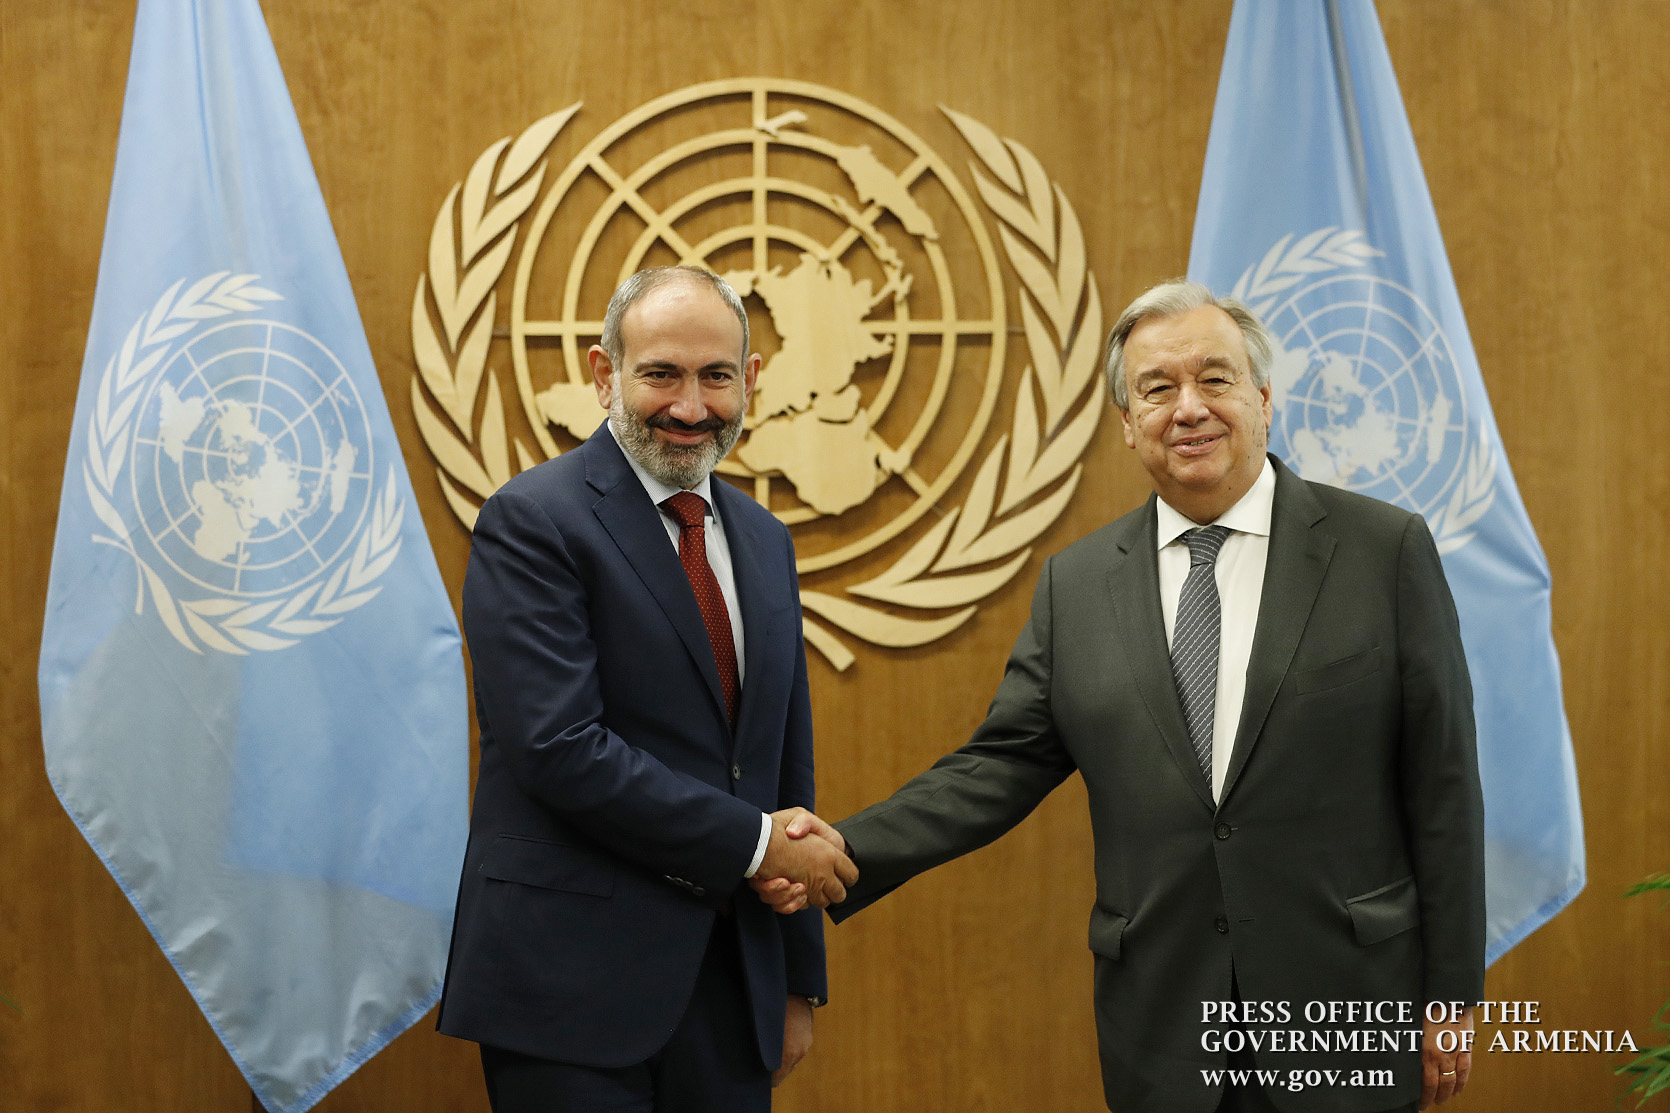 ООН полностью поддерживает повестку реформ Армении - Антонио Гутерриш